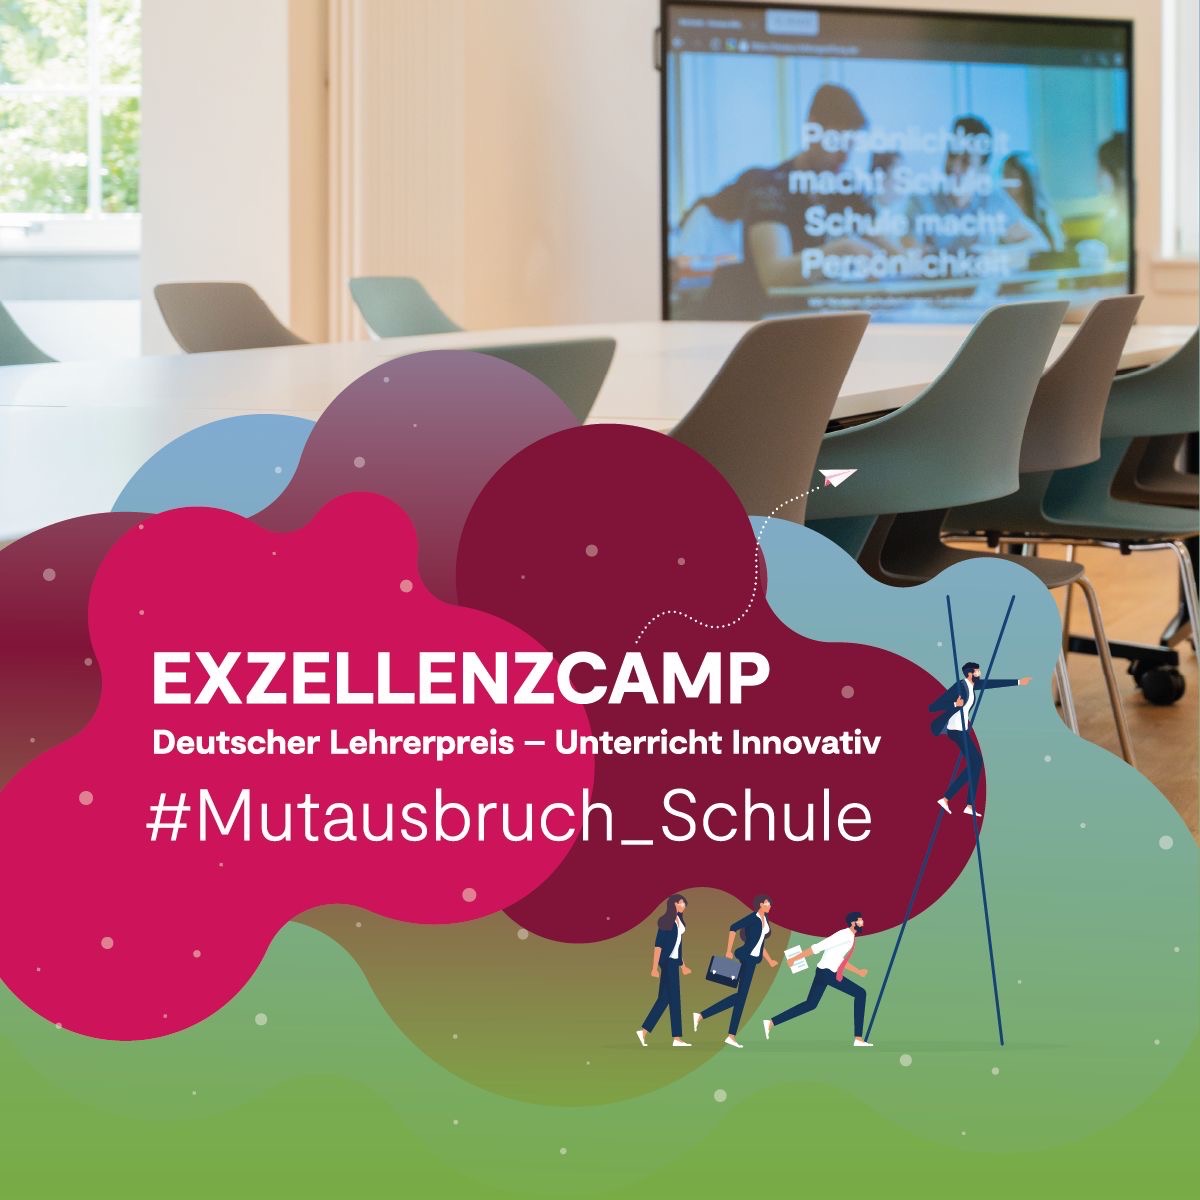 You are currently viewing Die Albert-Schweitzer-Realschule beim bundesweiten Exzellenzcamp #Mutausbruch Schule